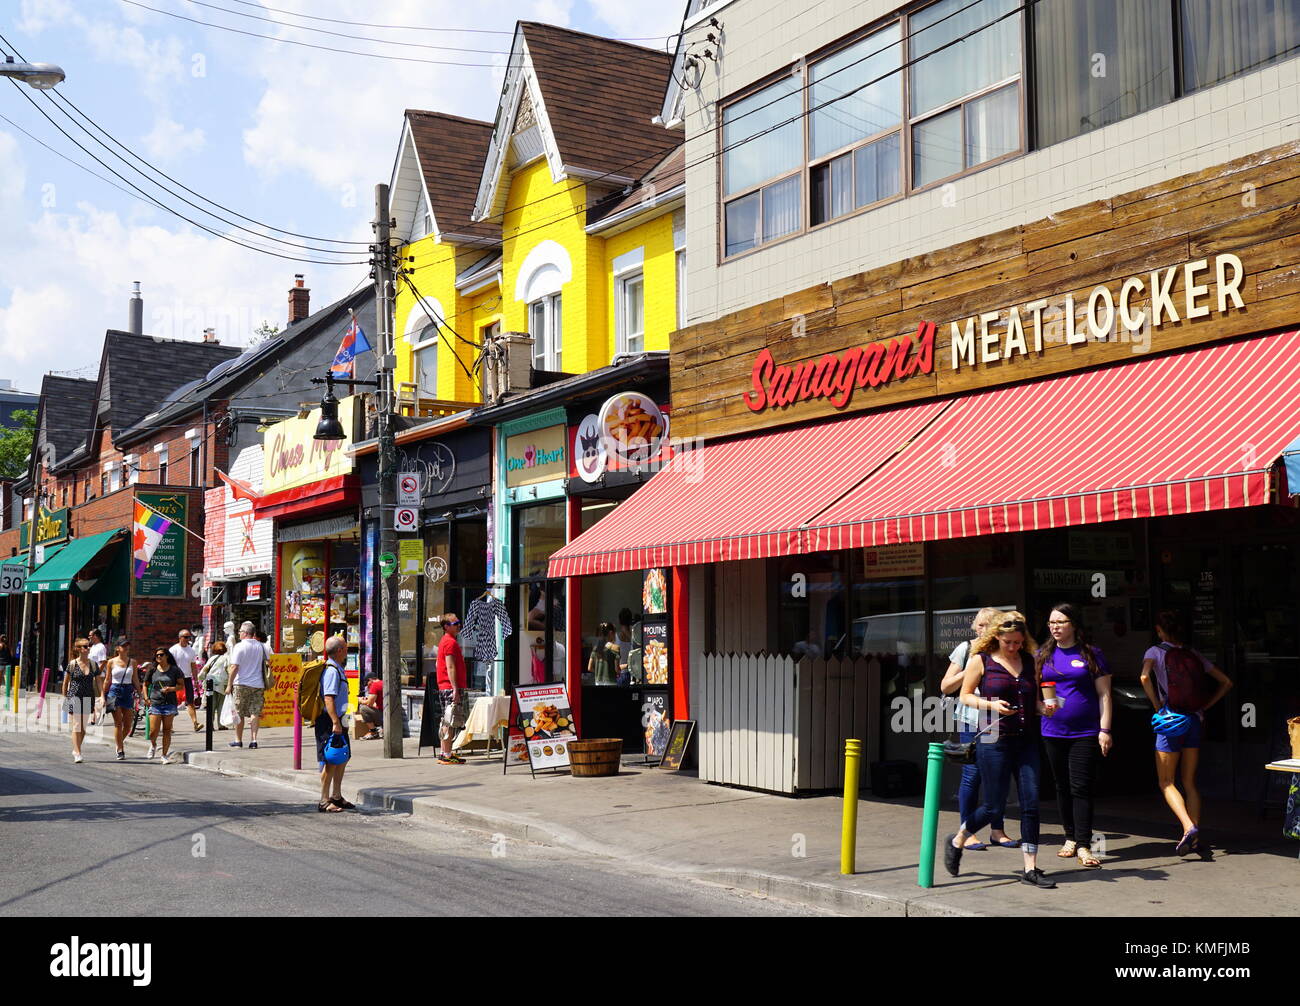 Strade di Toronto, Sanagan carne Locker,un vecchio negozio di macellaio nel cuore di Kensington Market a Toronto, in Canada Foto Stock